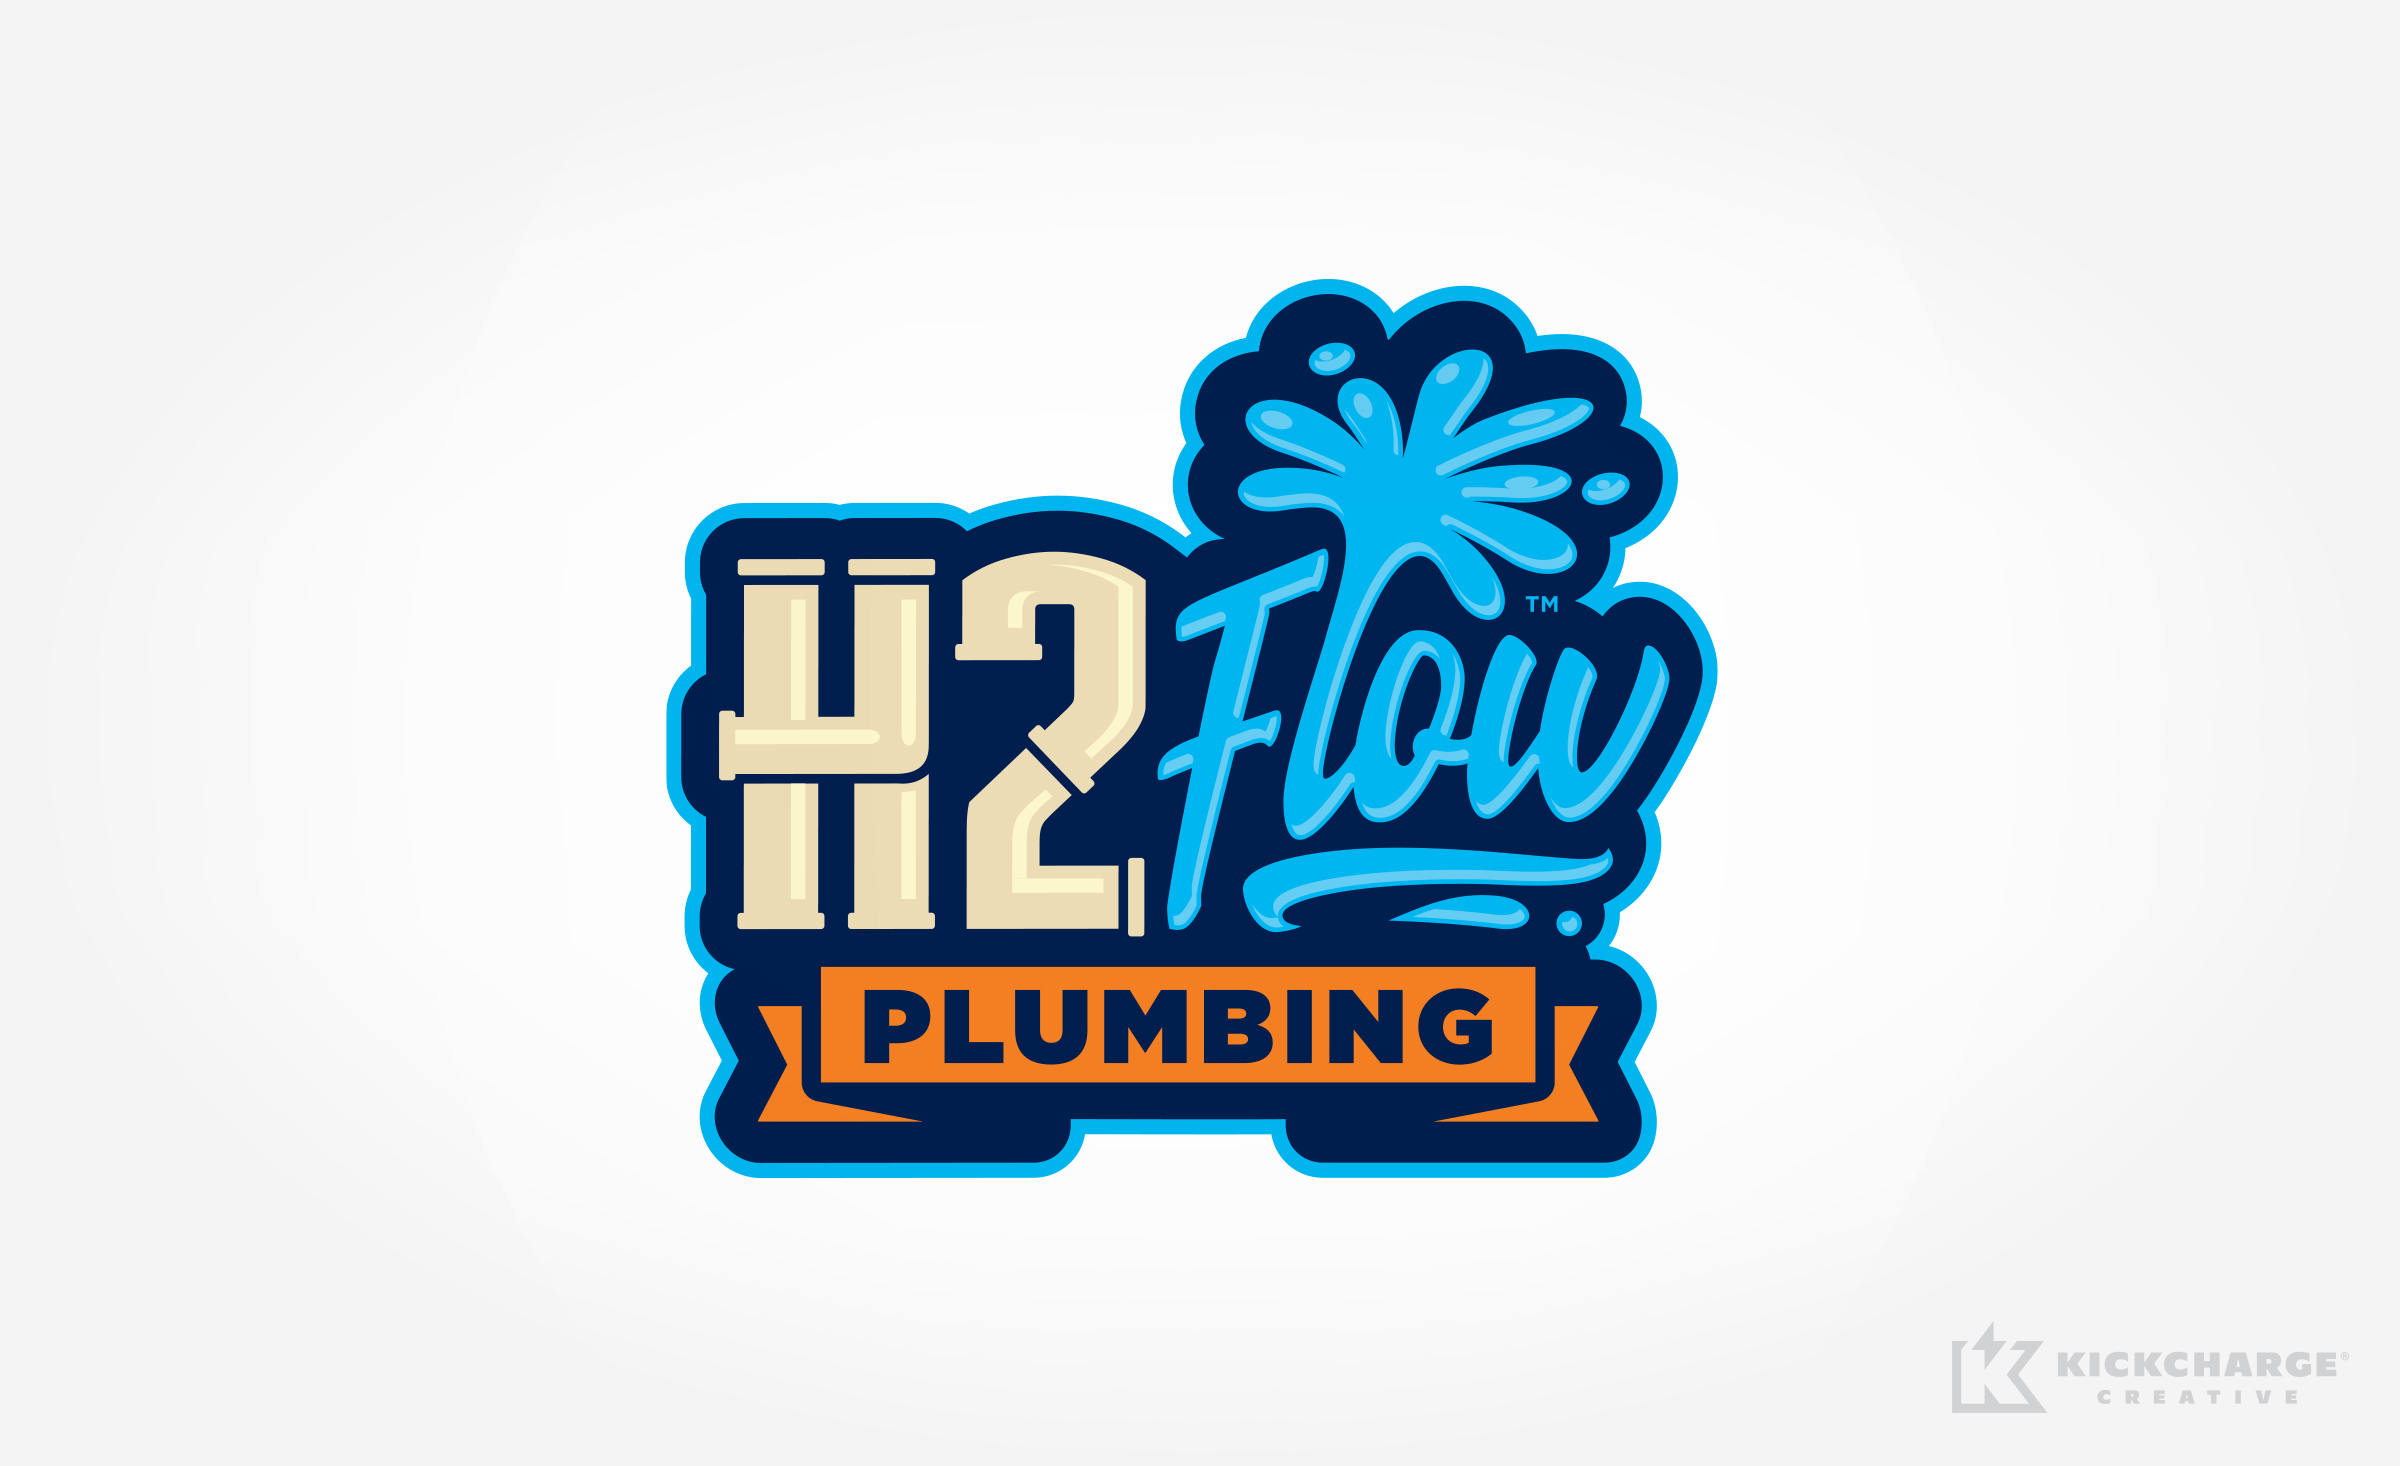 plumbing logo for H2Flow Plumbing